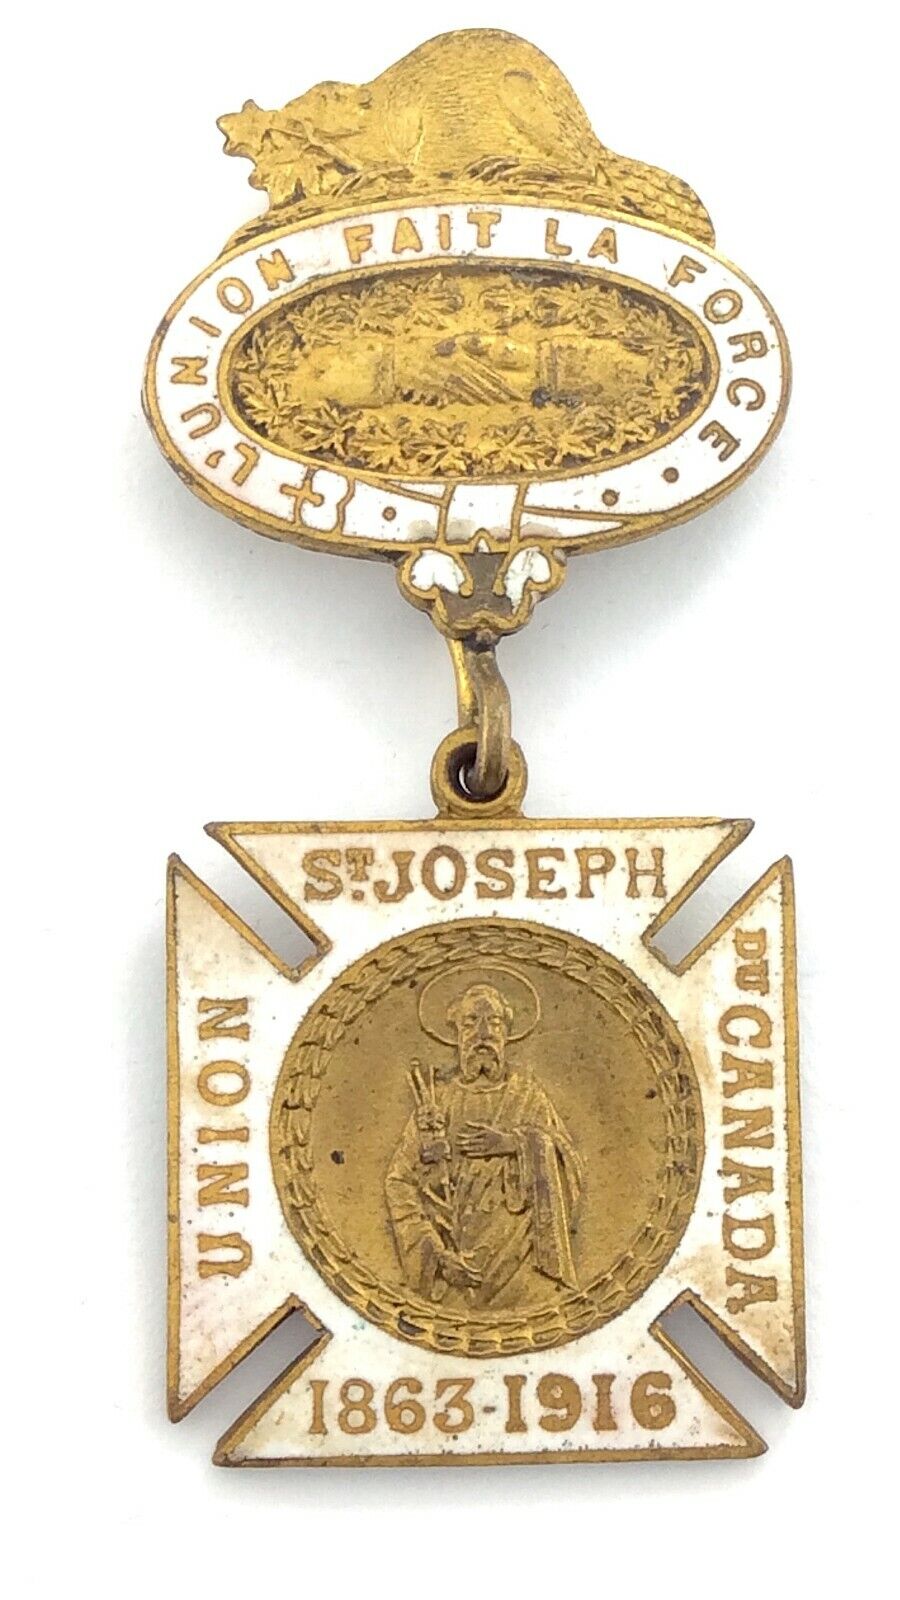 Union St Joseph Du Canada 1863-1916 L'Union Fait La Force Medal L144